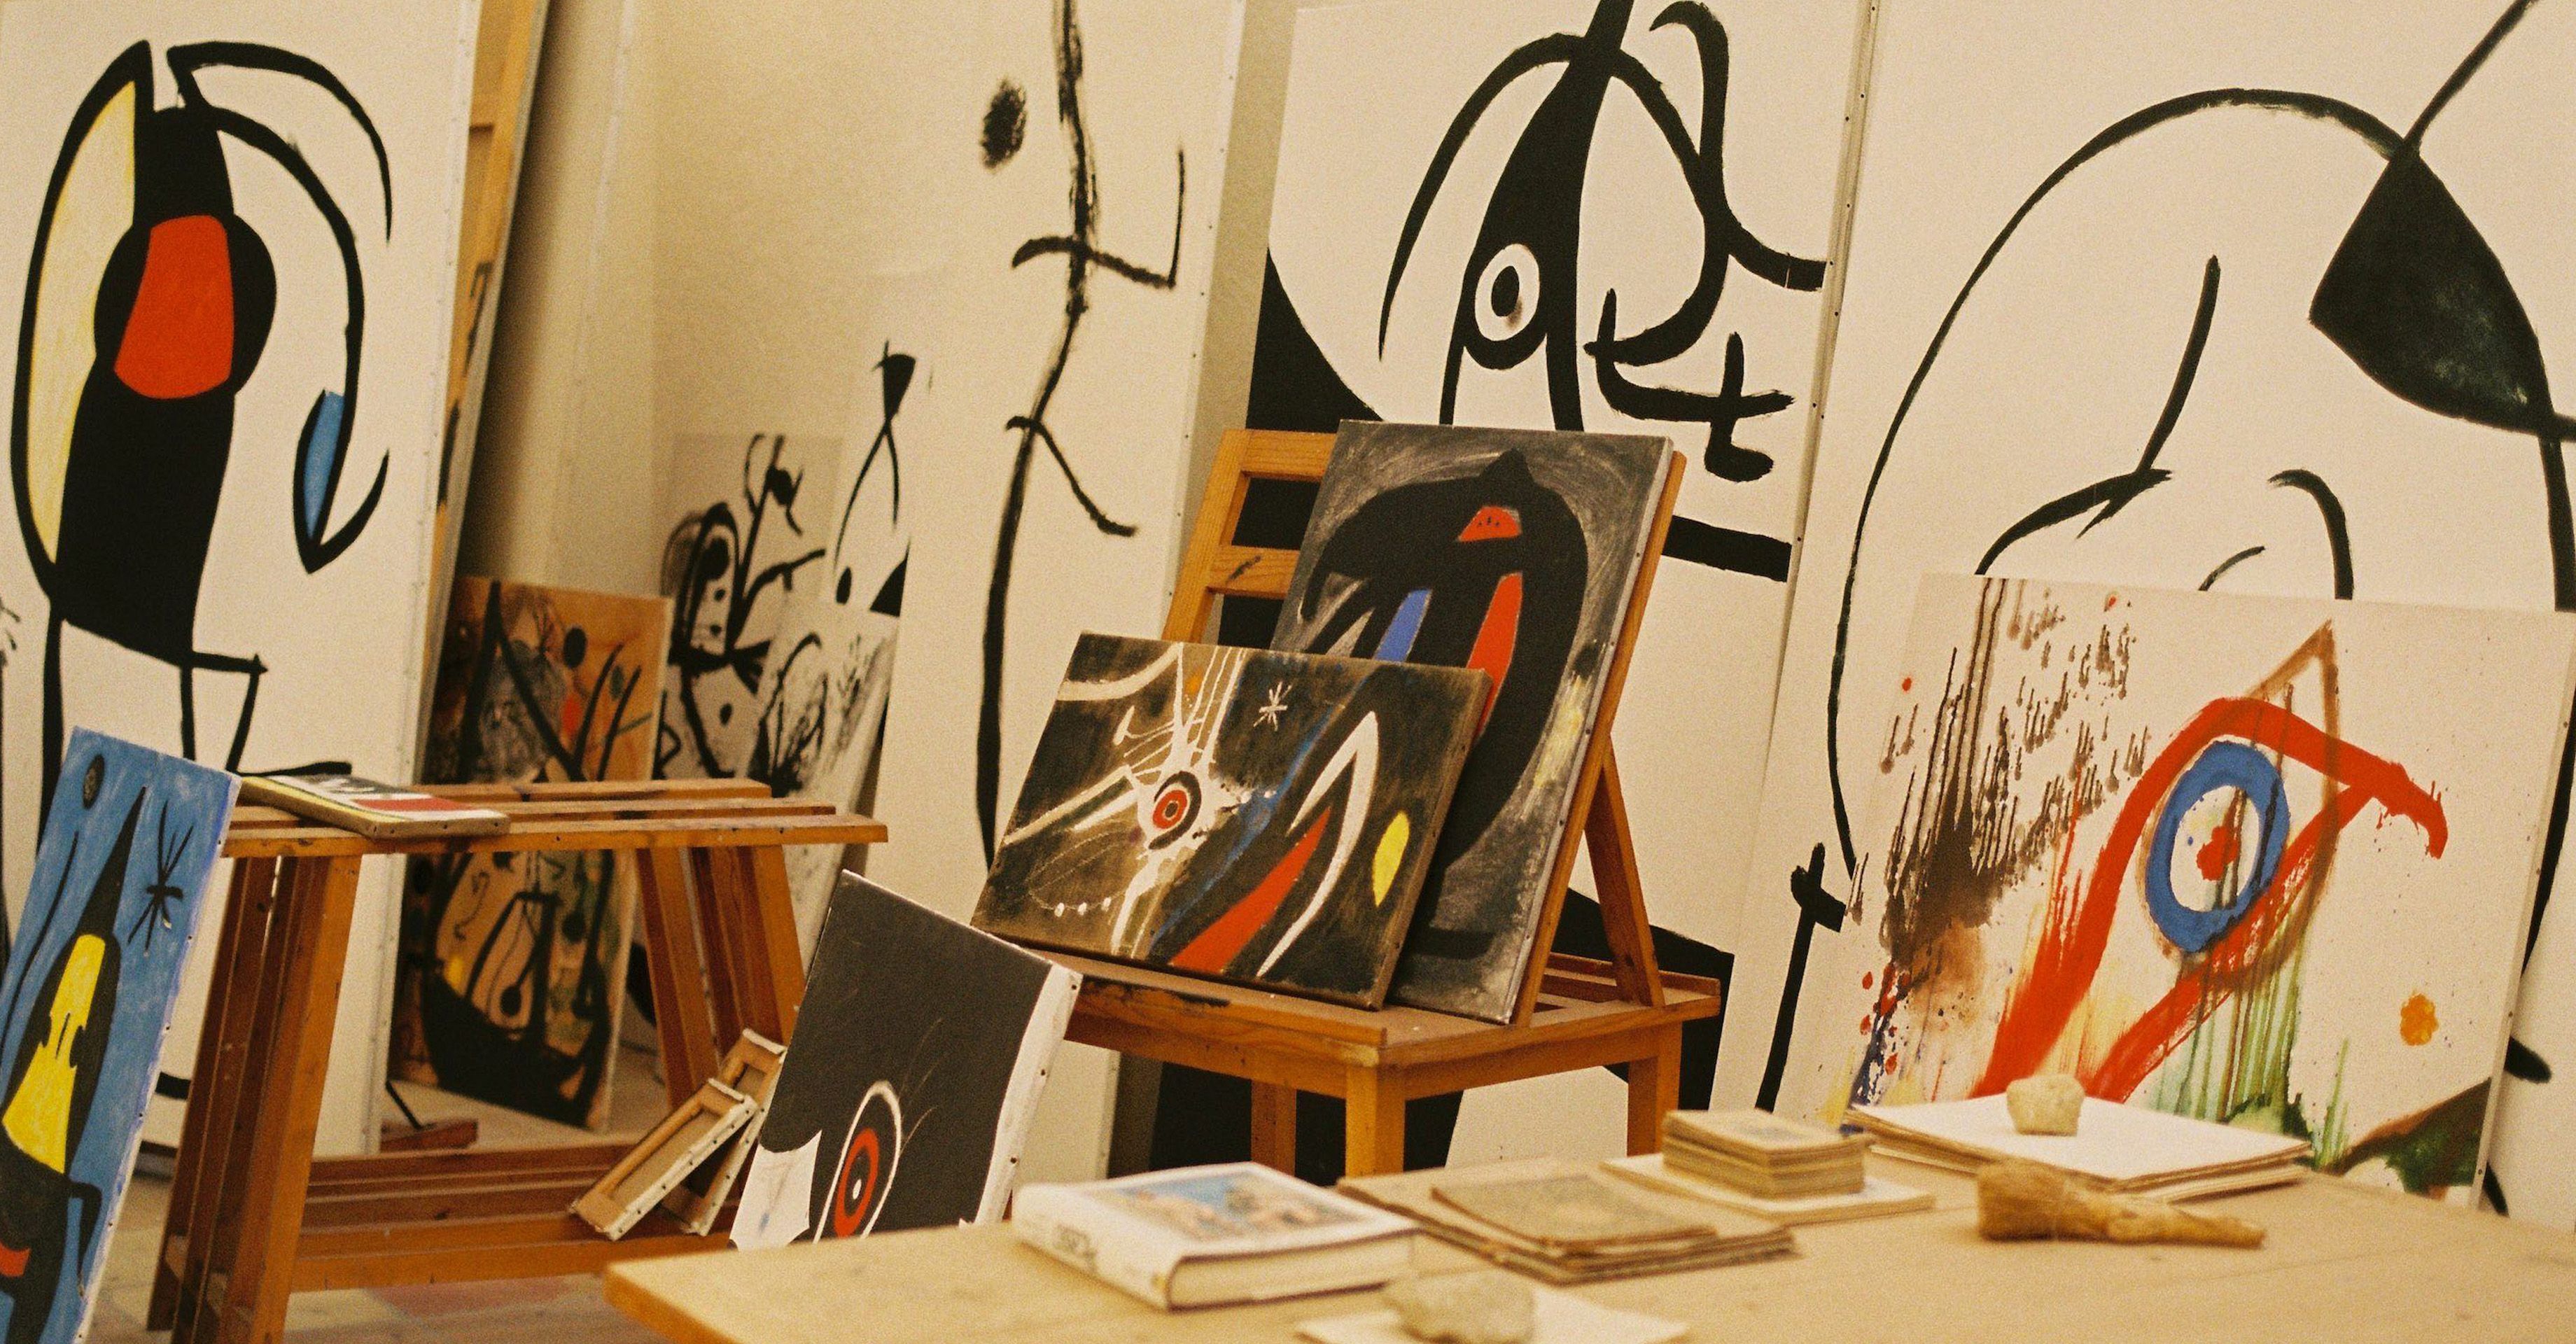 In Studio: A Look Inside Joan Miró’s Workshop